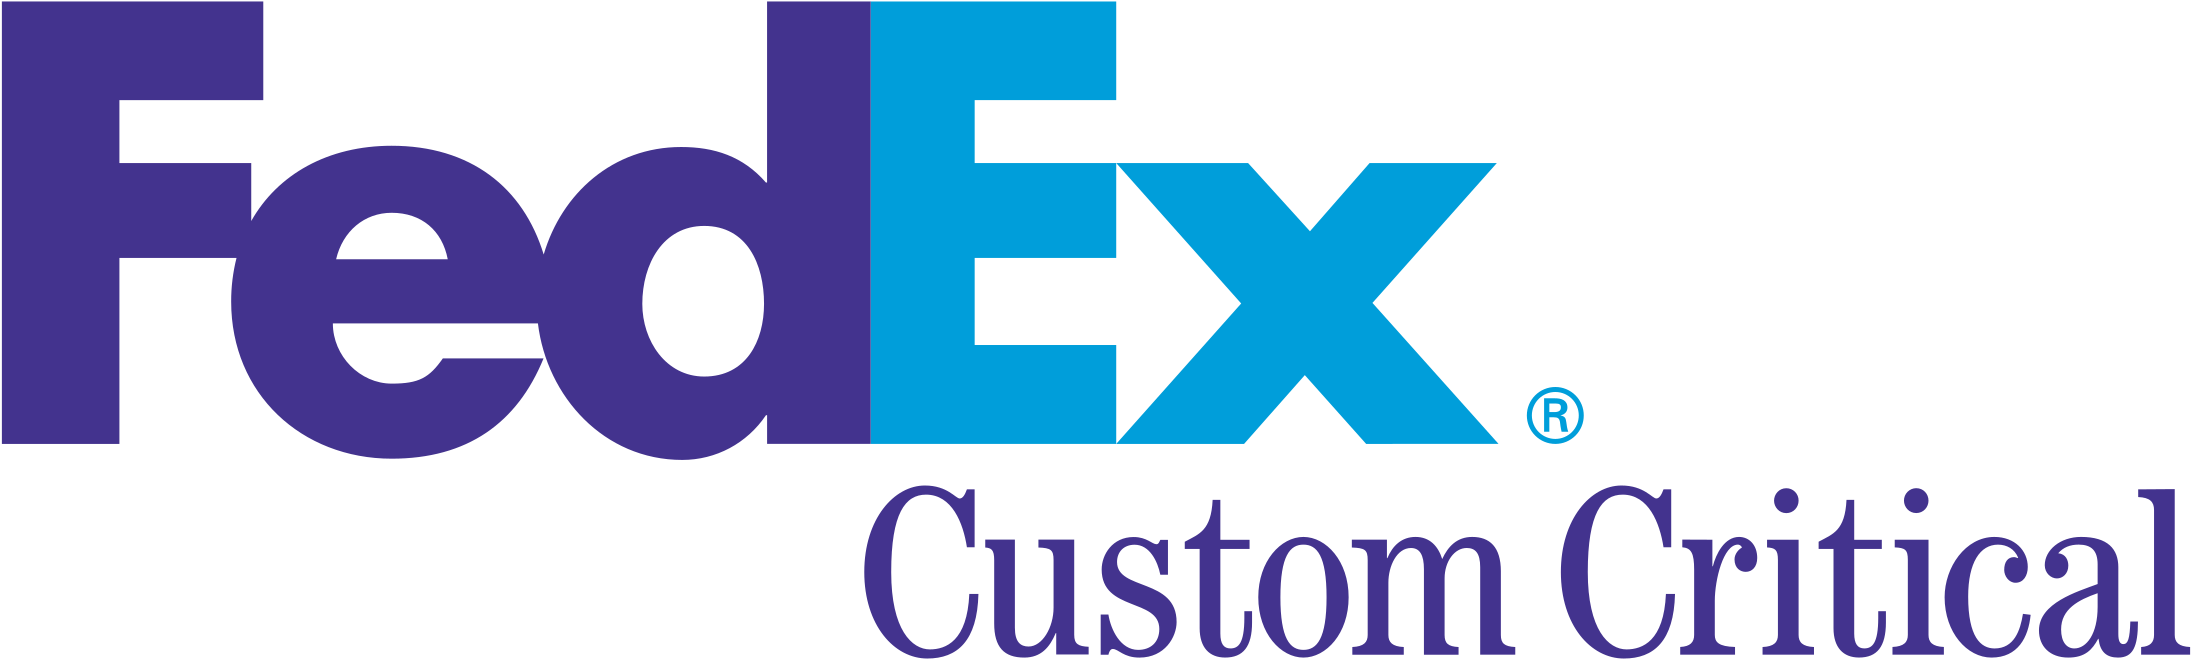 Fedex Custom Critical Logo Png Transparent - Fedex Critical Custom Clipart (2400x2400), Png Download